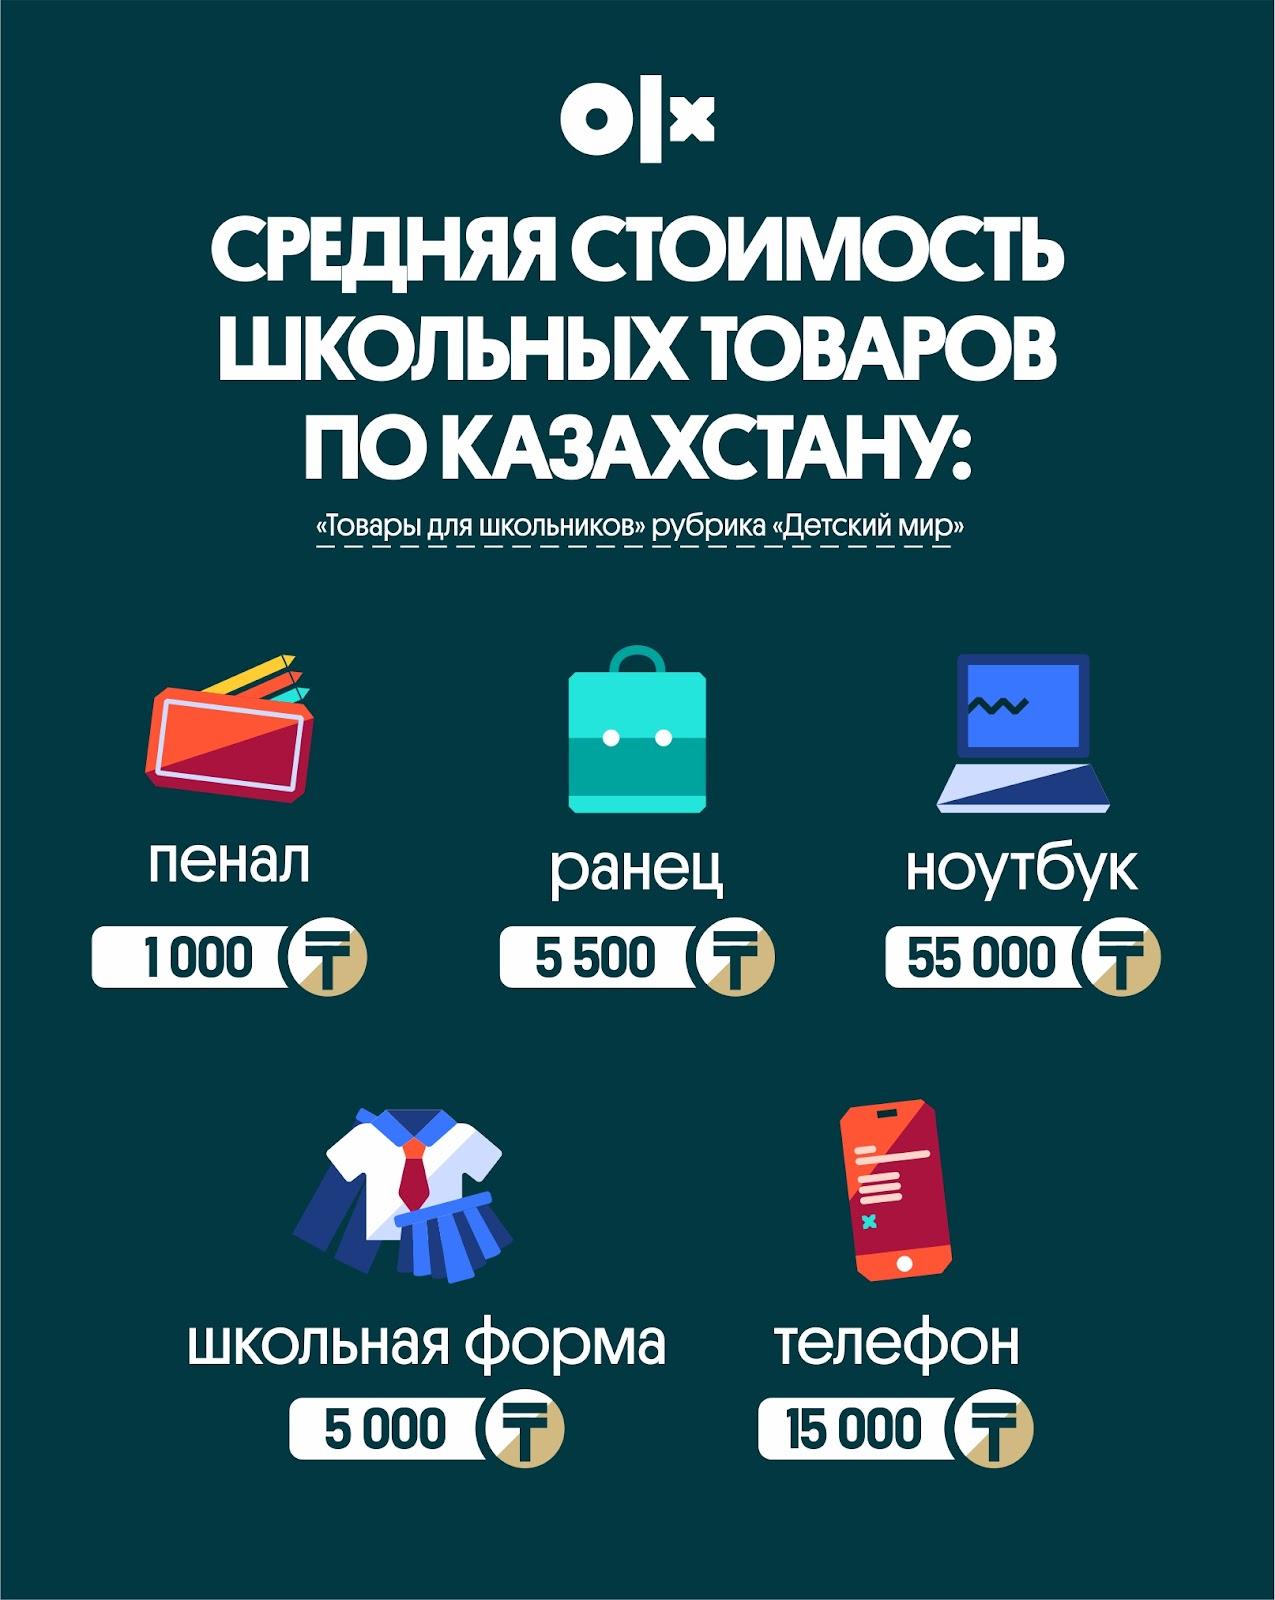 Средняя стоимомть школьных товаров по Казахстану